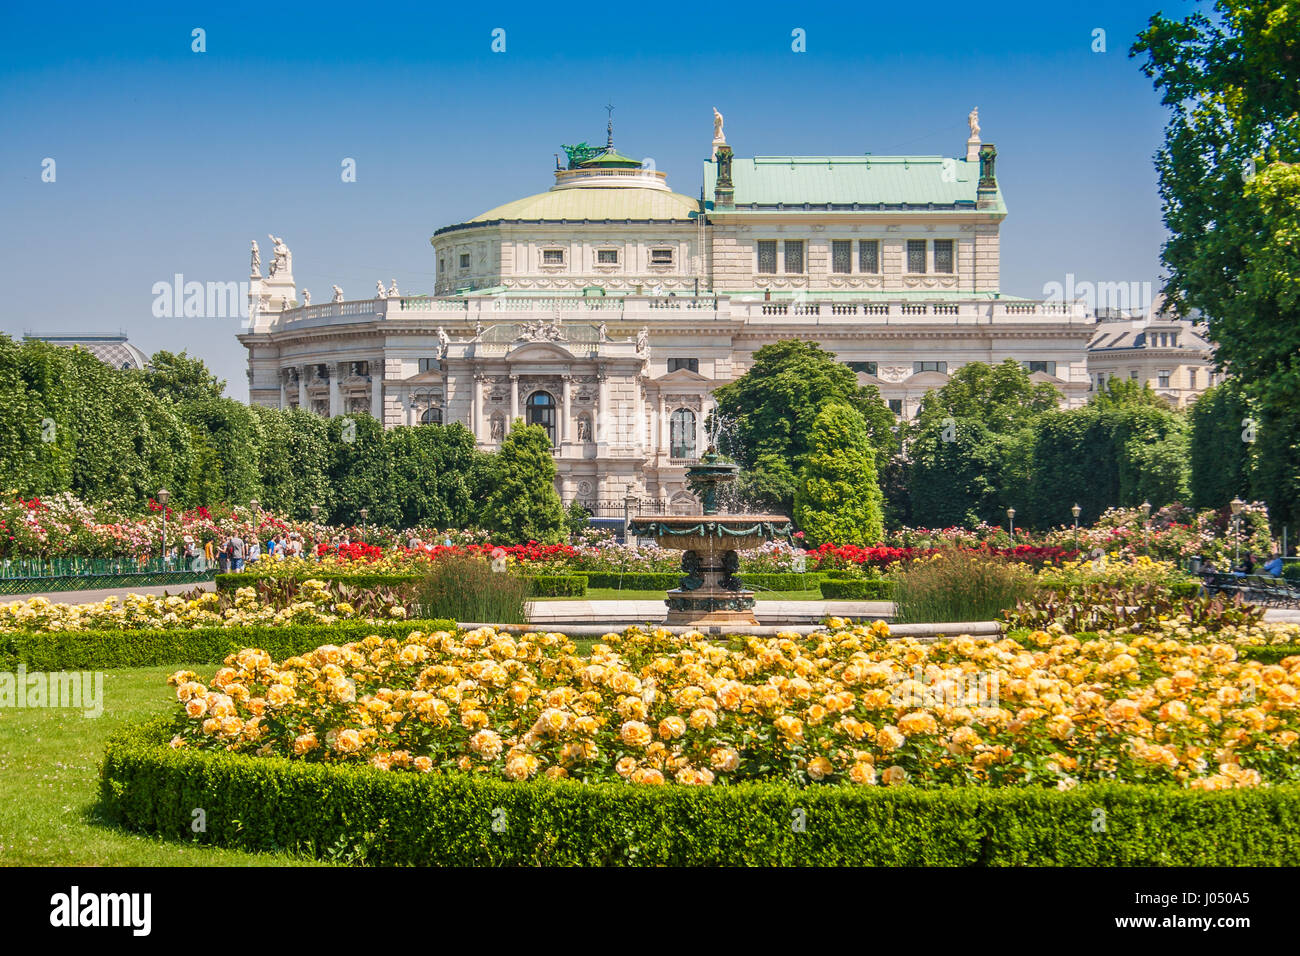 Bellissima vista del famoso Volksgarten (Persone giardino) parco pubblico con la sua storica Burgtheater in background in estate, Vienna, Austria Foto Stock